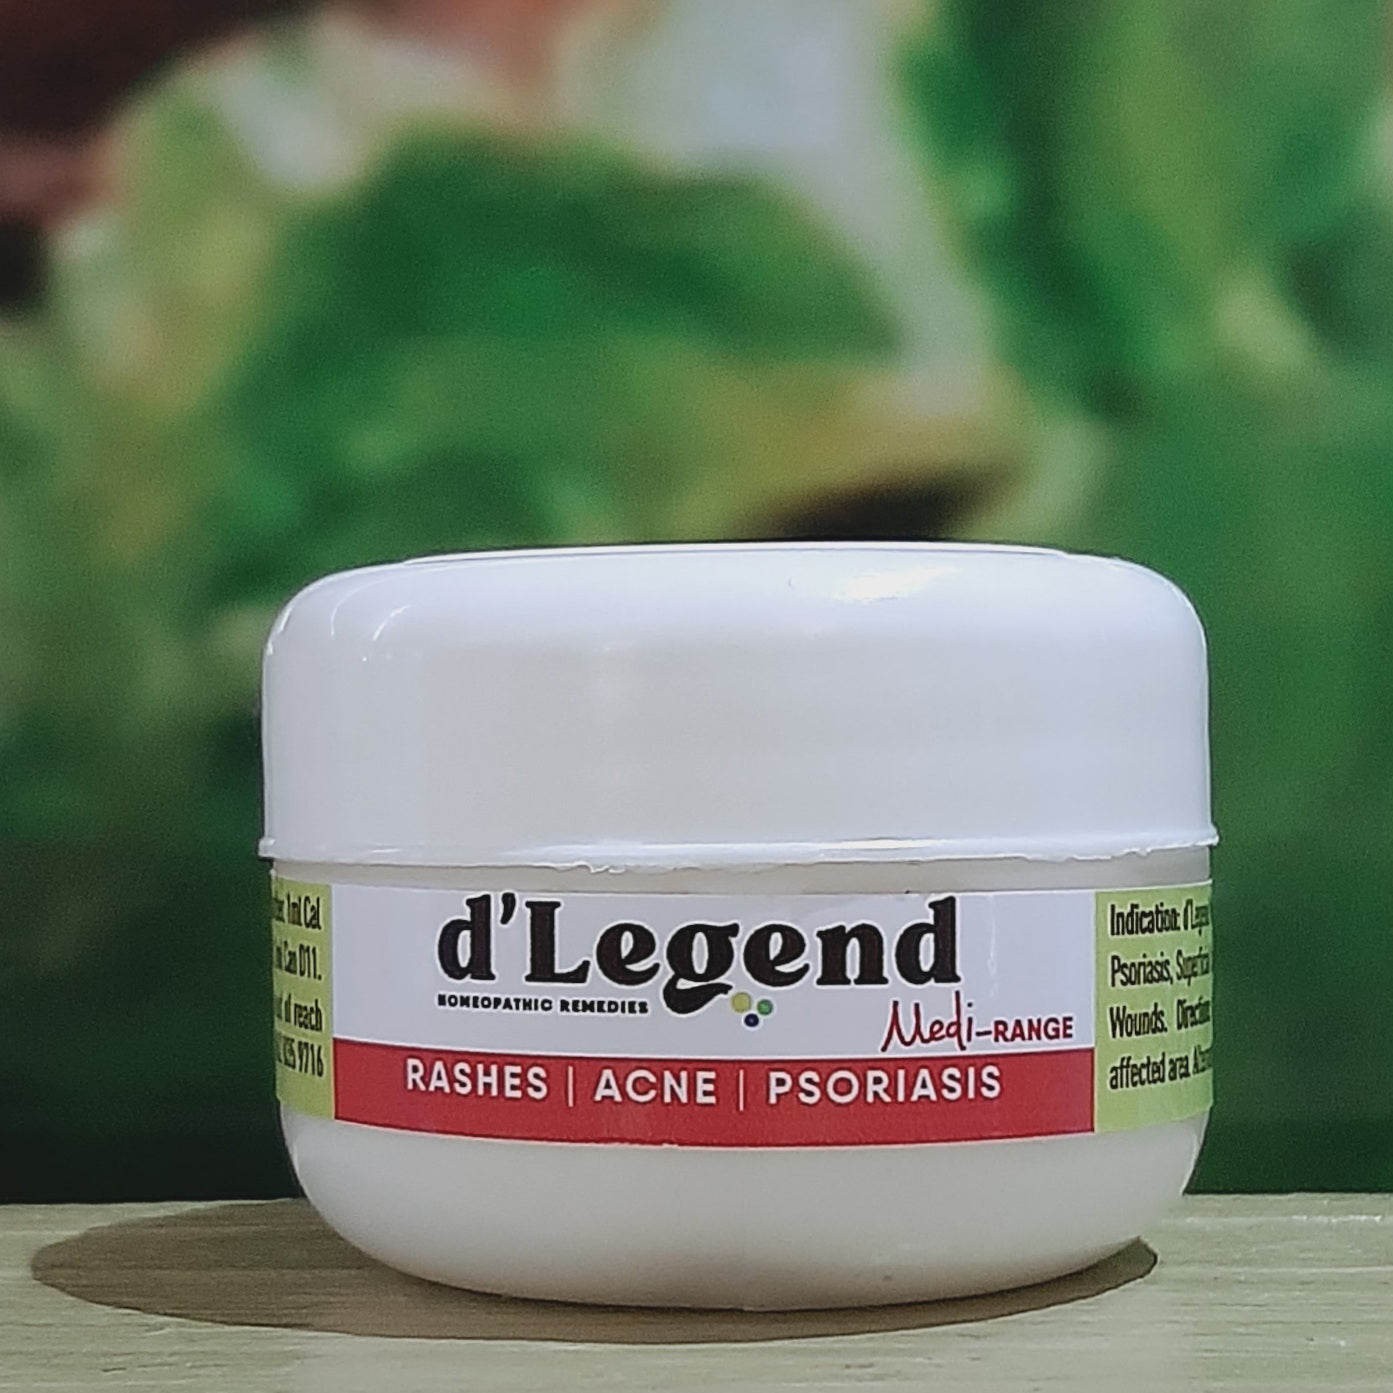 d'Legend Medi-range Rashes-Acne-Psoriasis 50ml Cream